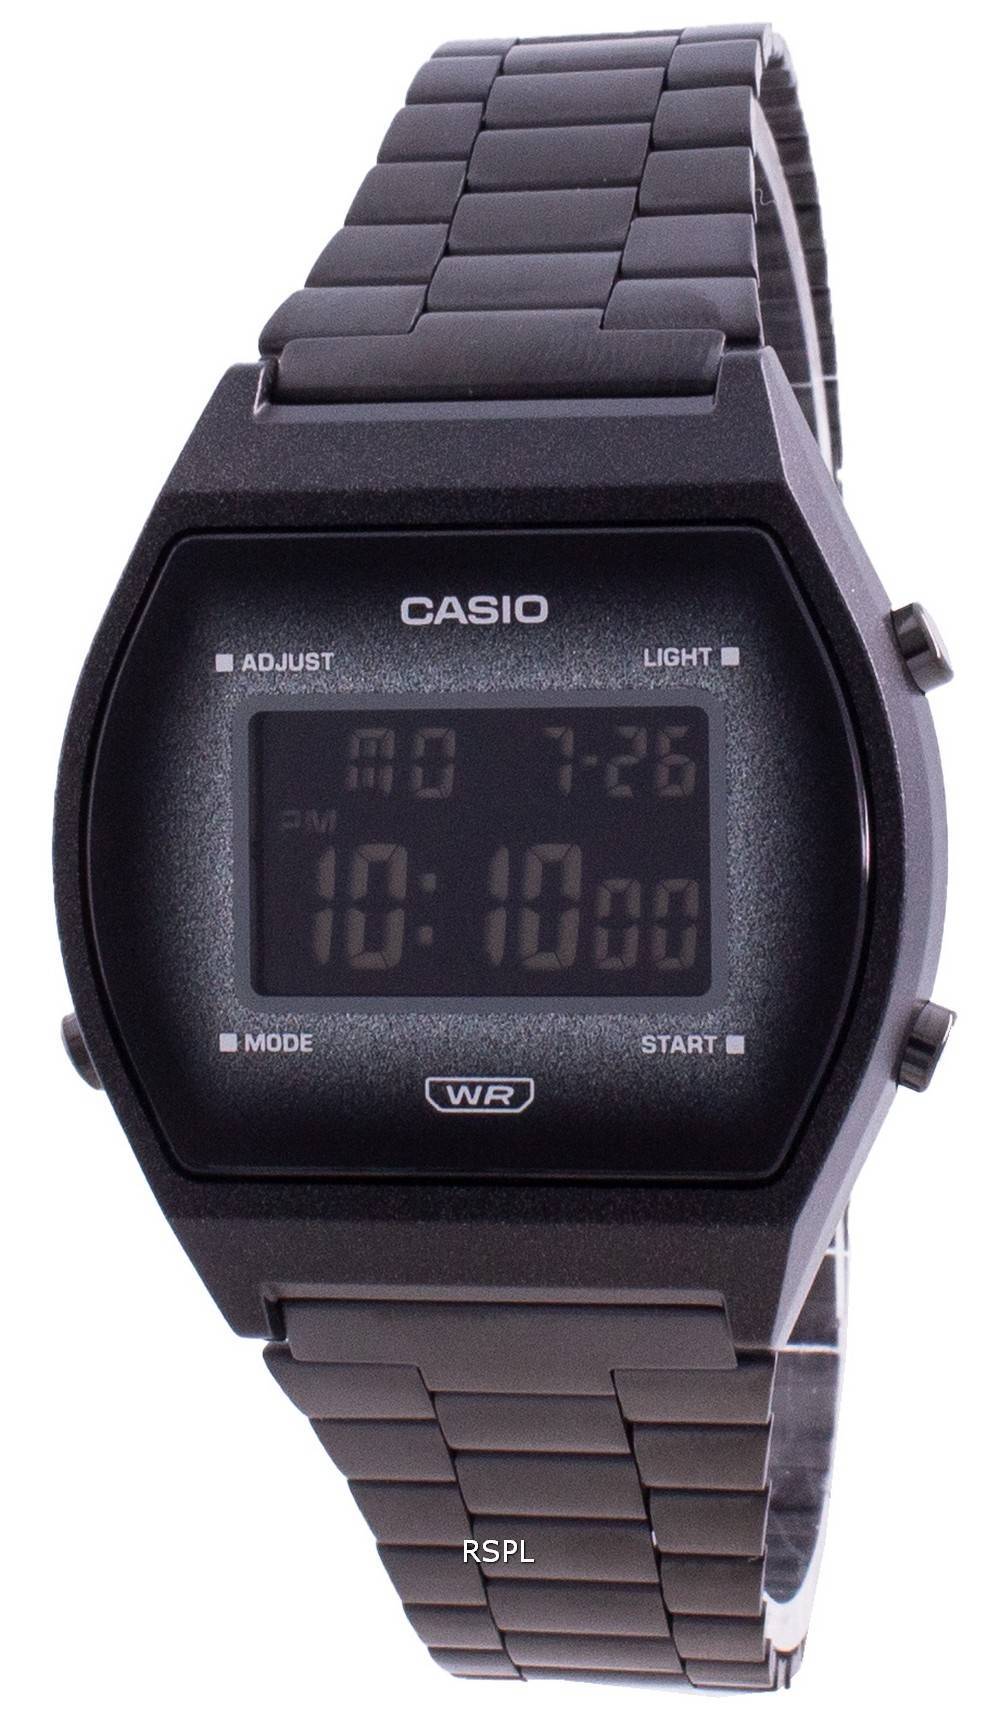 カシオデジタルユースクォーツB640WBG-1Bユニセックス腕時計